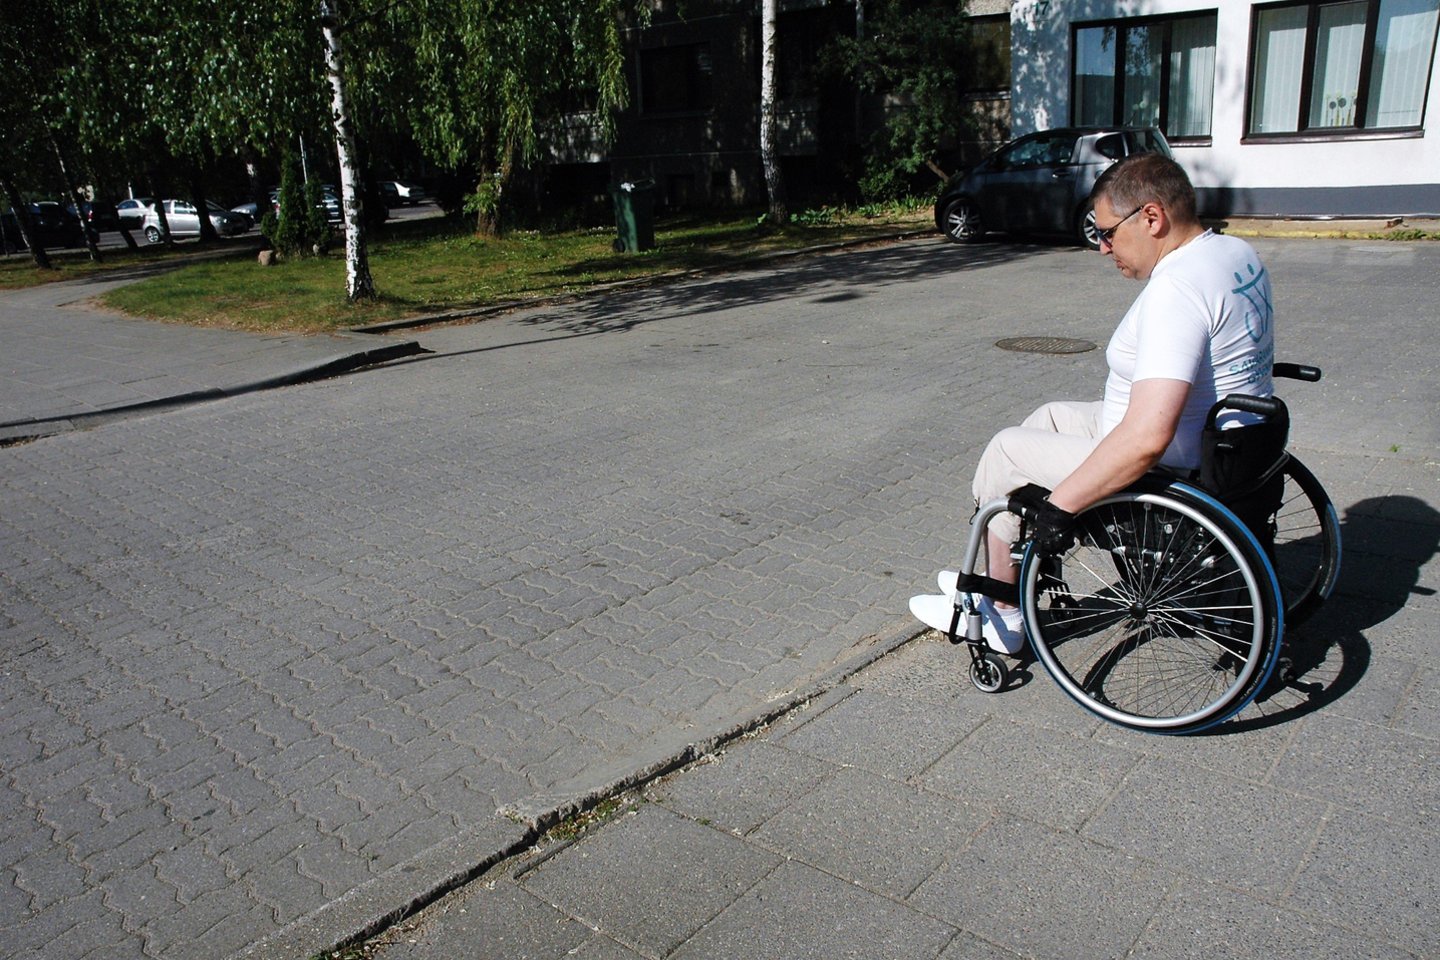  Neįgaliuosius vienijančių organizacijų atstovai konstatavo, kad Vilniaus miesto Pilaitės mikrorajonas, palyginti su kitais sostinės rajonais, neįgaliesiems pritaikyta neblogai, tačiau trūkumų vis dar apstu.<br> L.Jakubauskienės nuotr.